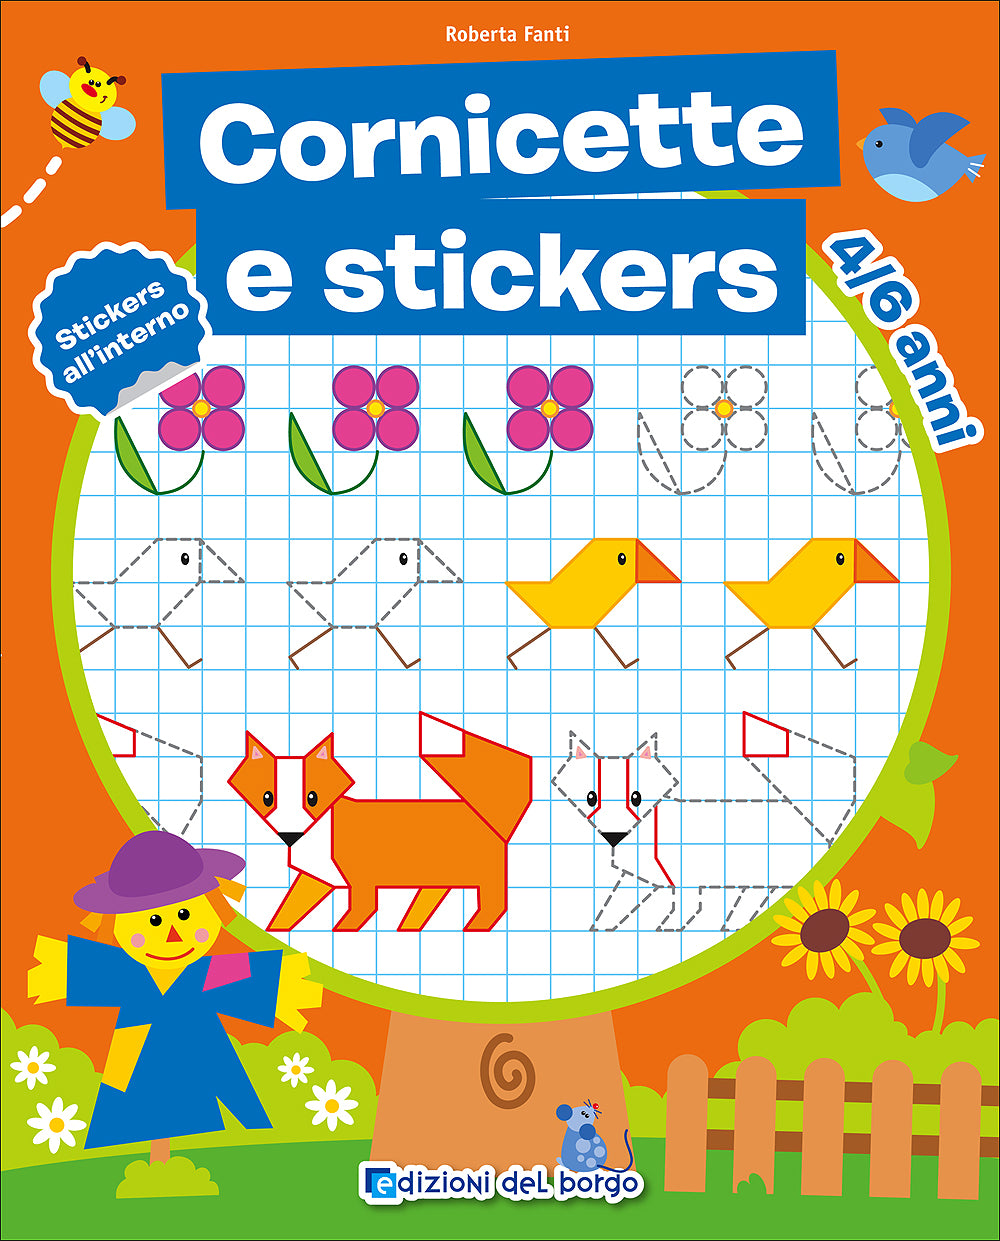 Cornicette e stickers - 4/6 anni. Stickers all'interno